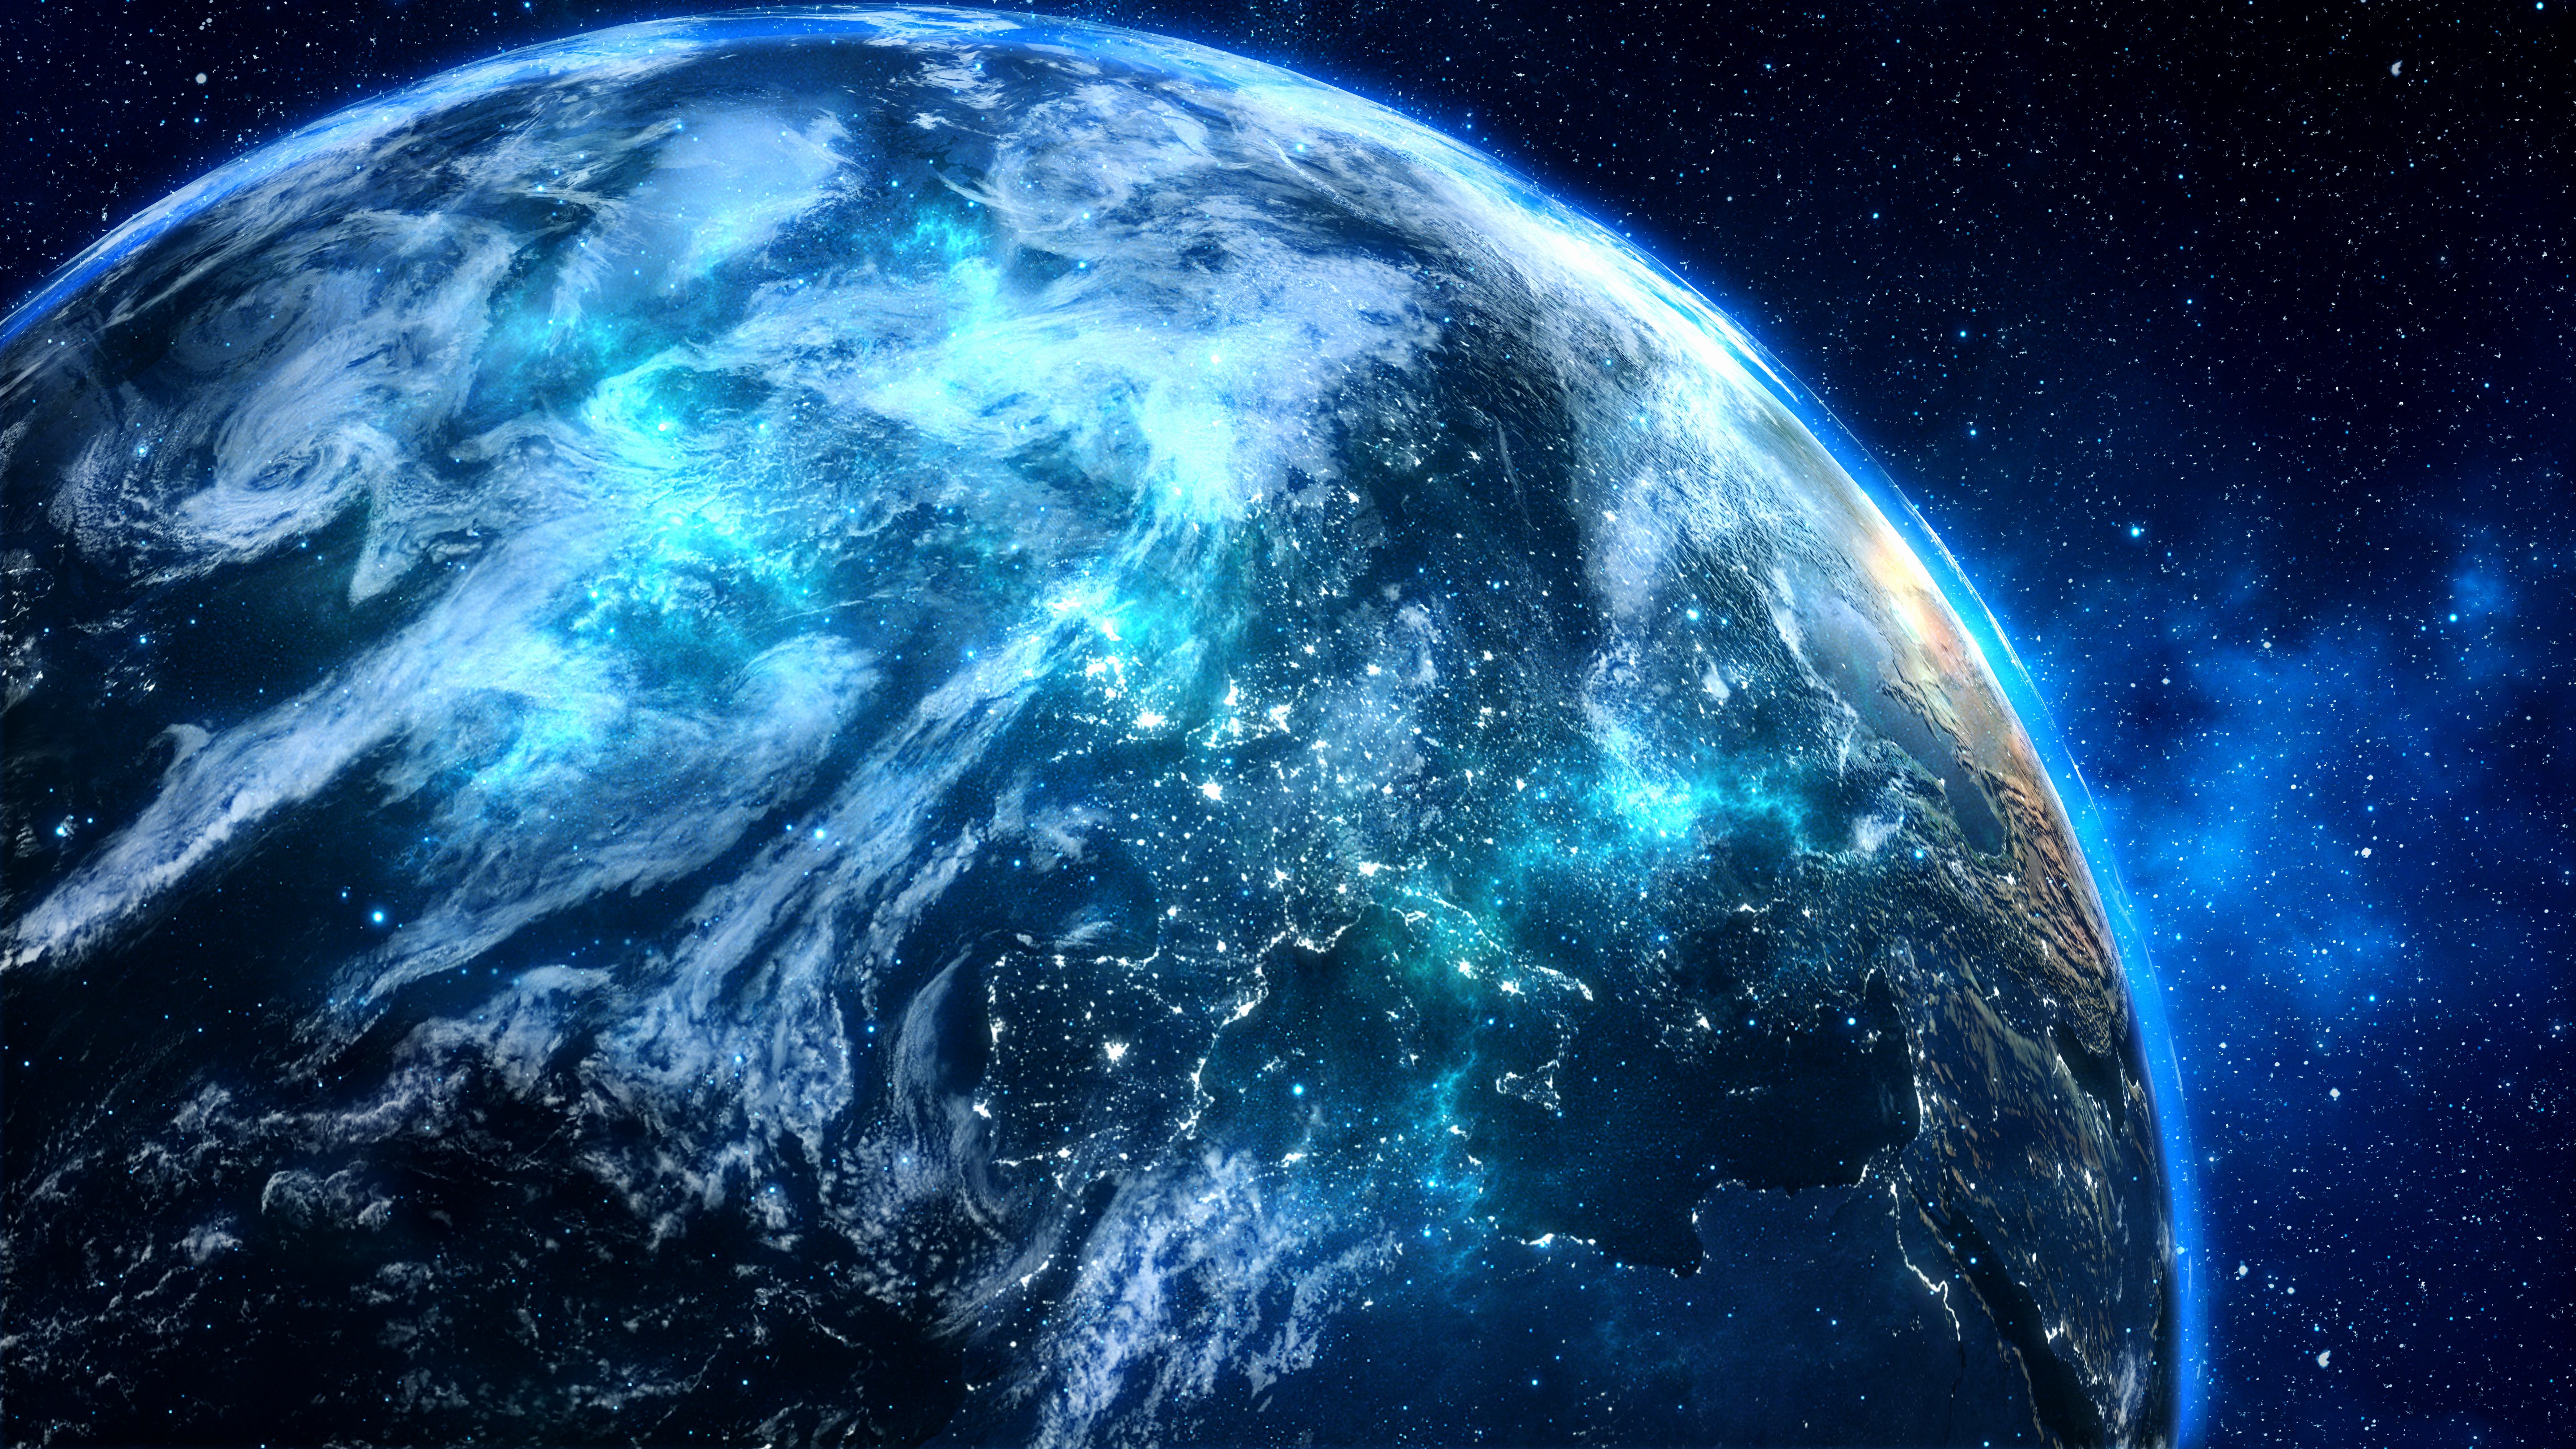 Картинка планета земля из космоса. Планета земля в космосе. О земле и космосе. Голубая Планета земля. Вид земли из космоса.